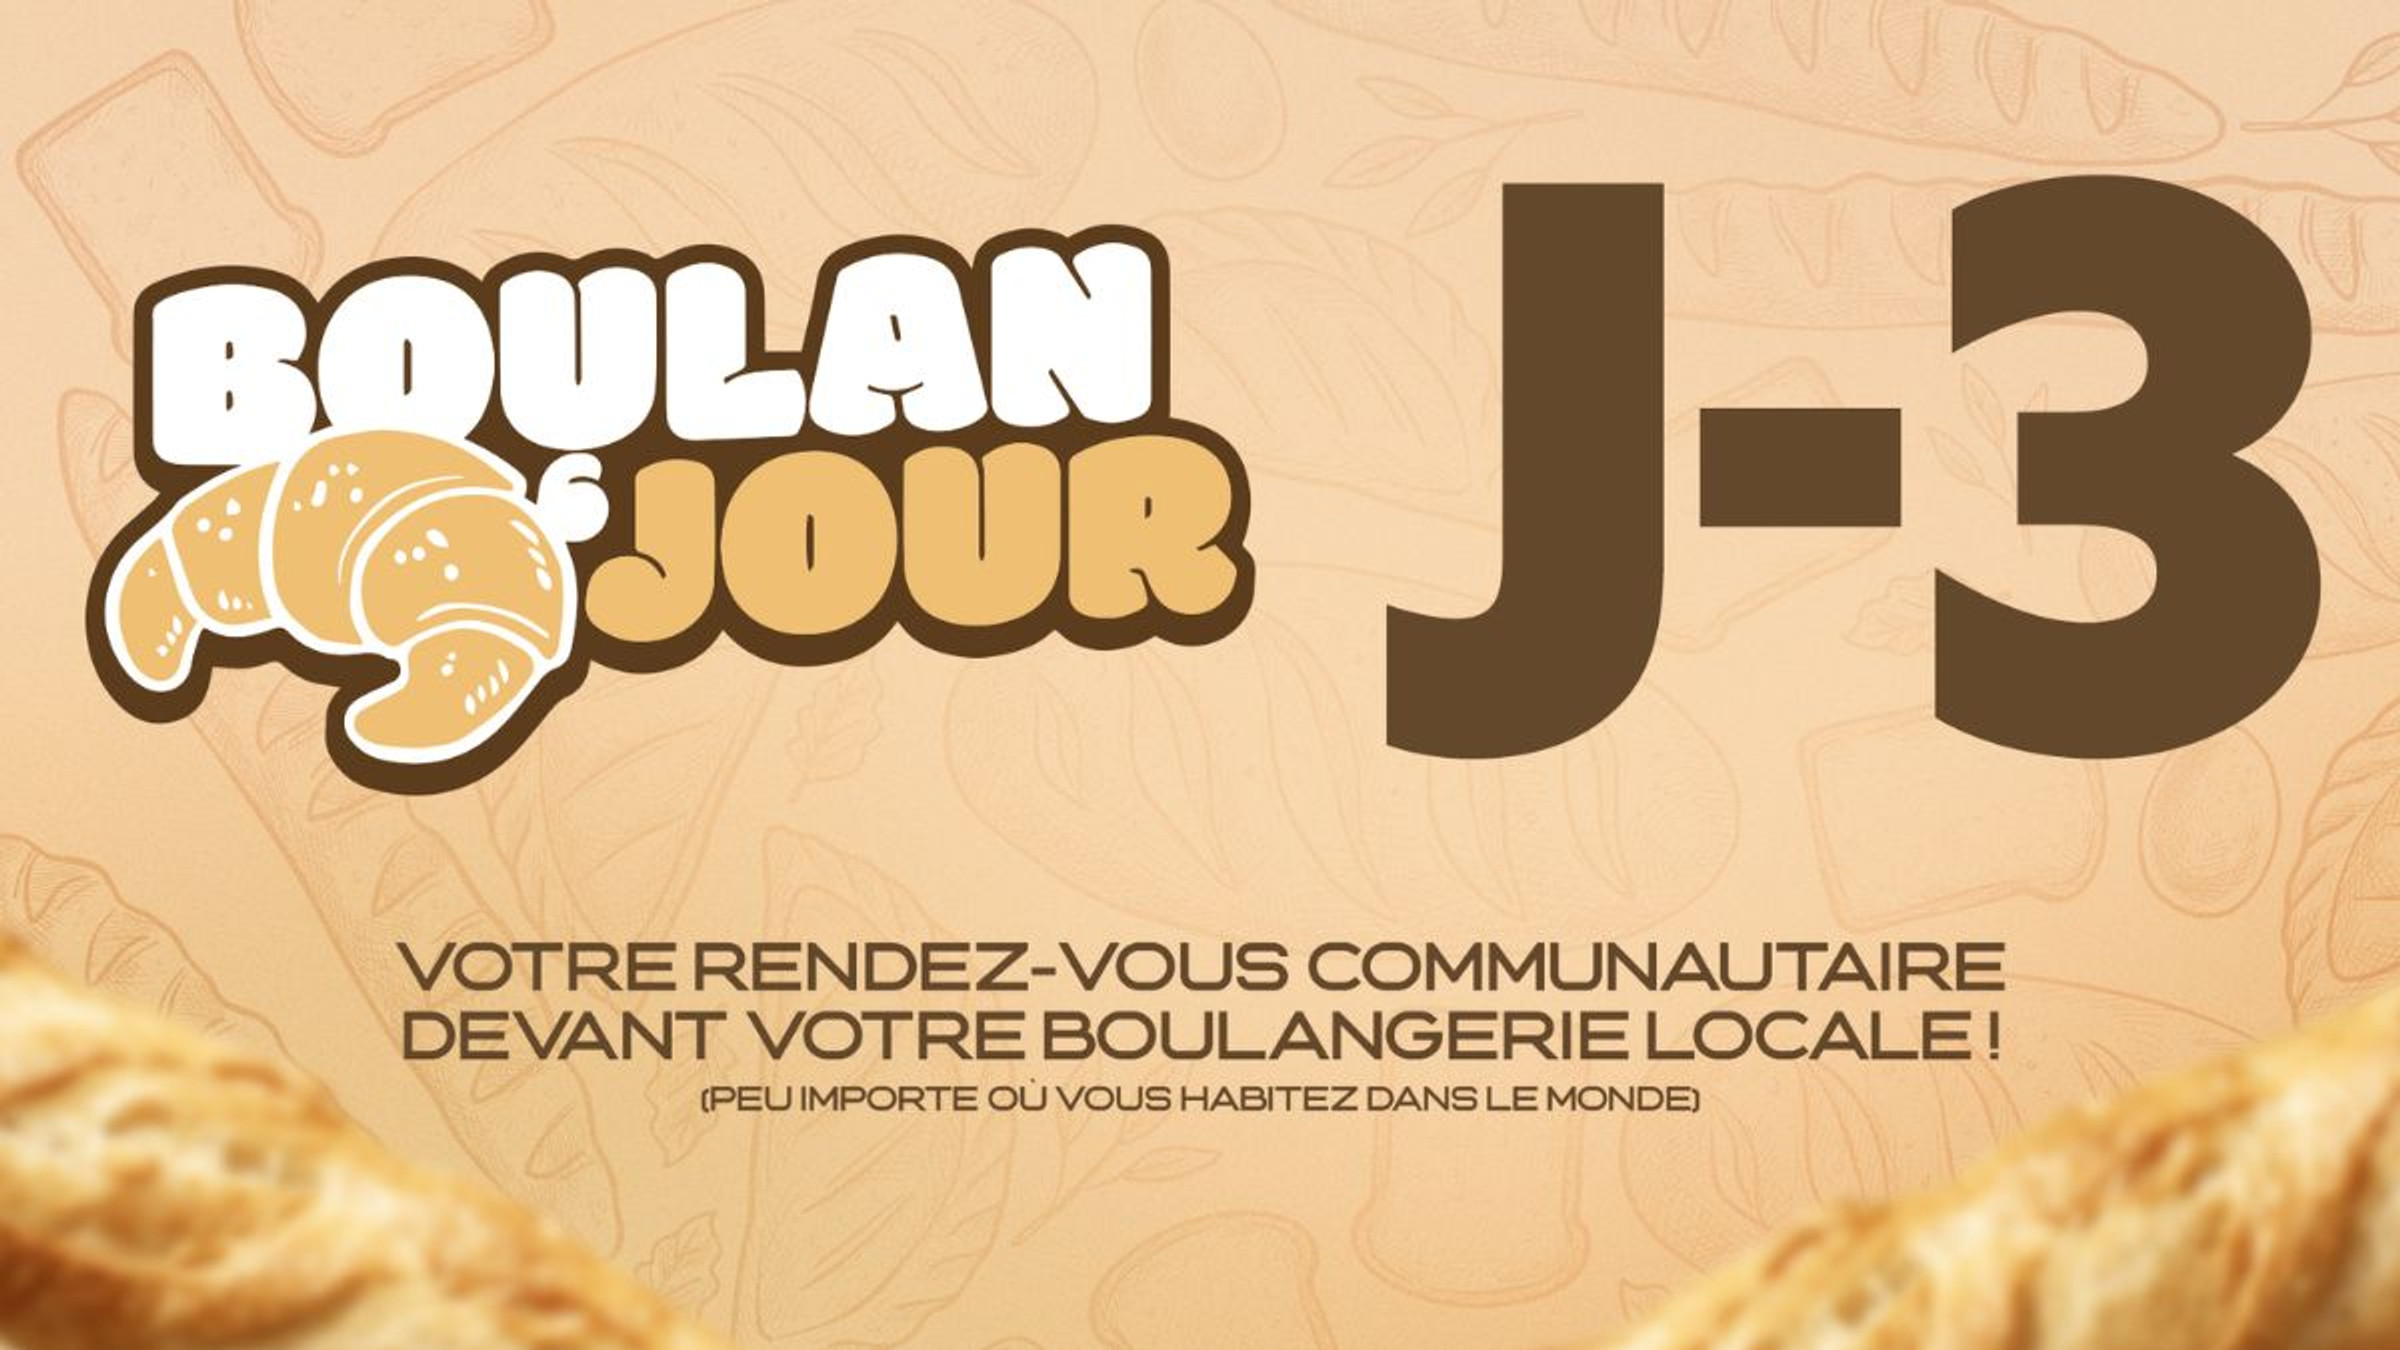 Boulanjour-zerator-date-lieu-octobre-twitch-boulangerie-communaute-meet